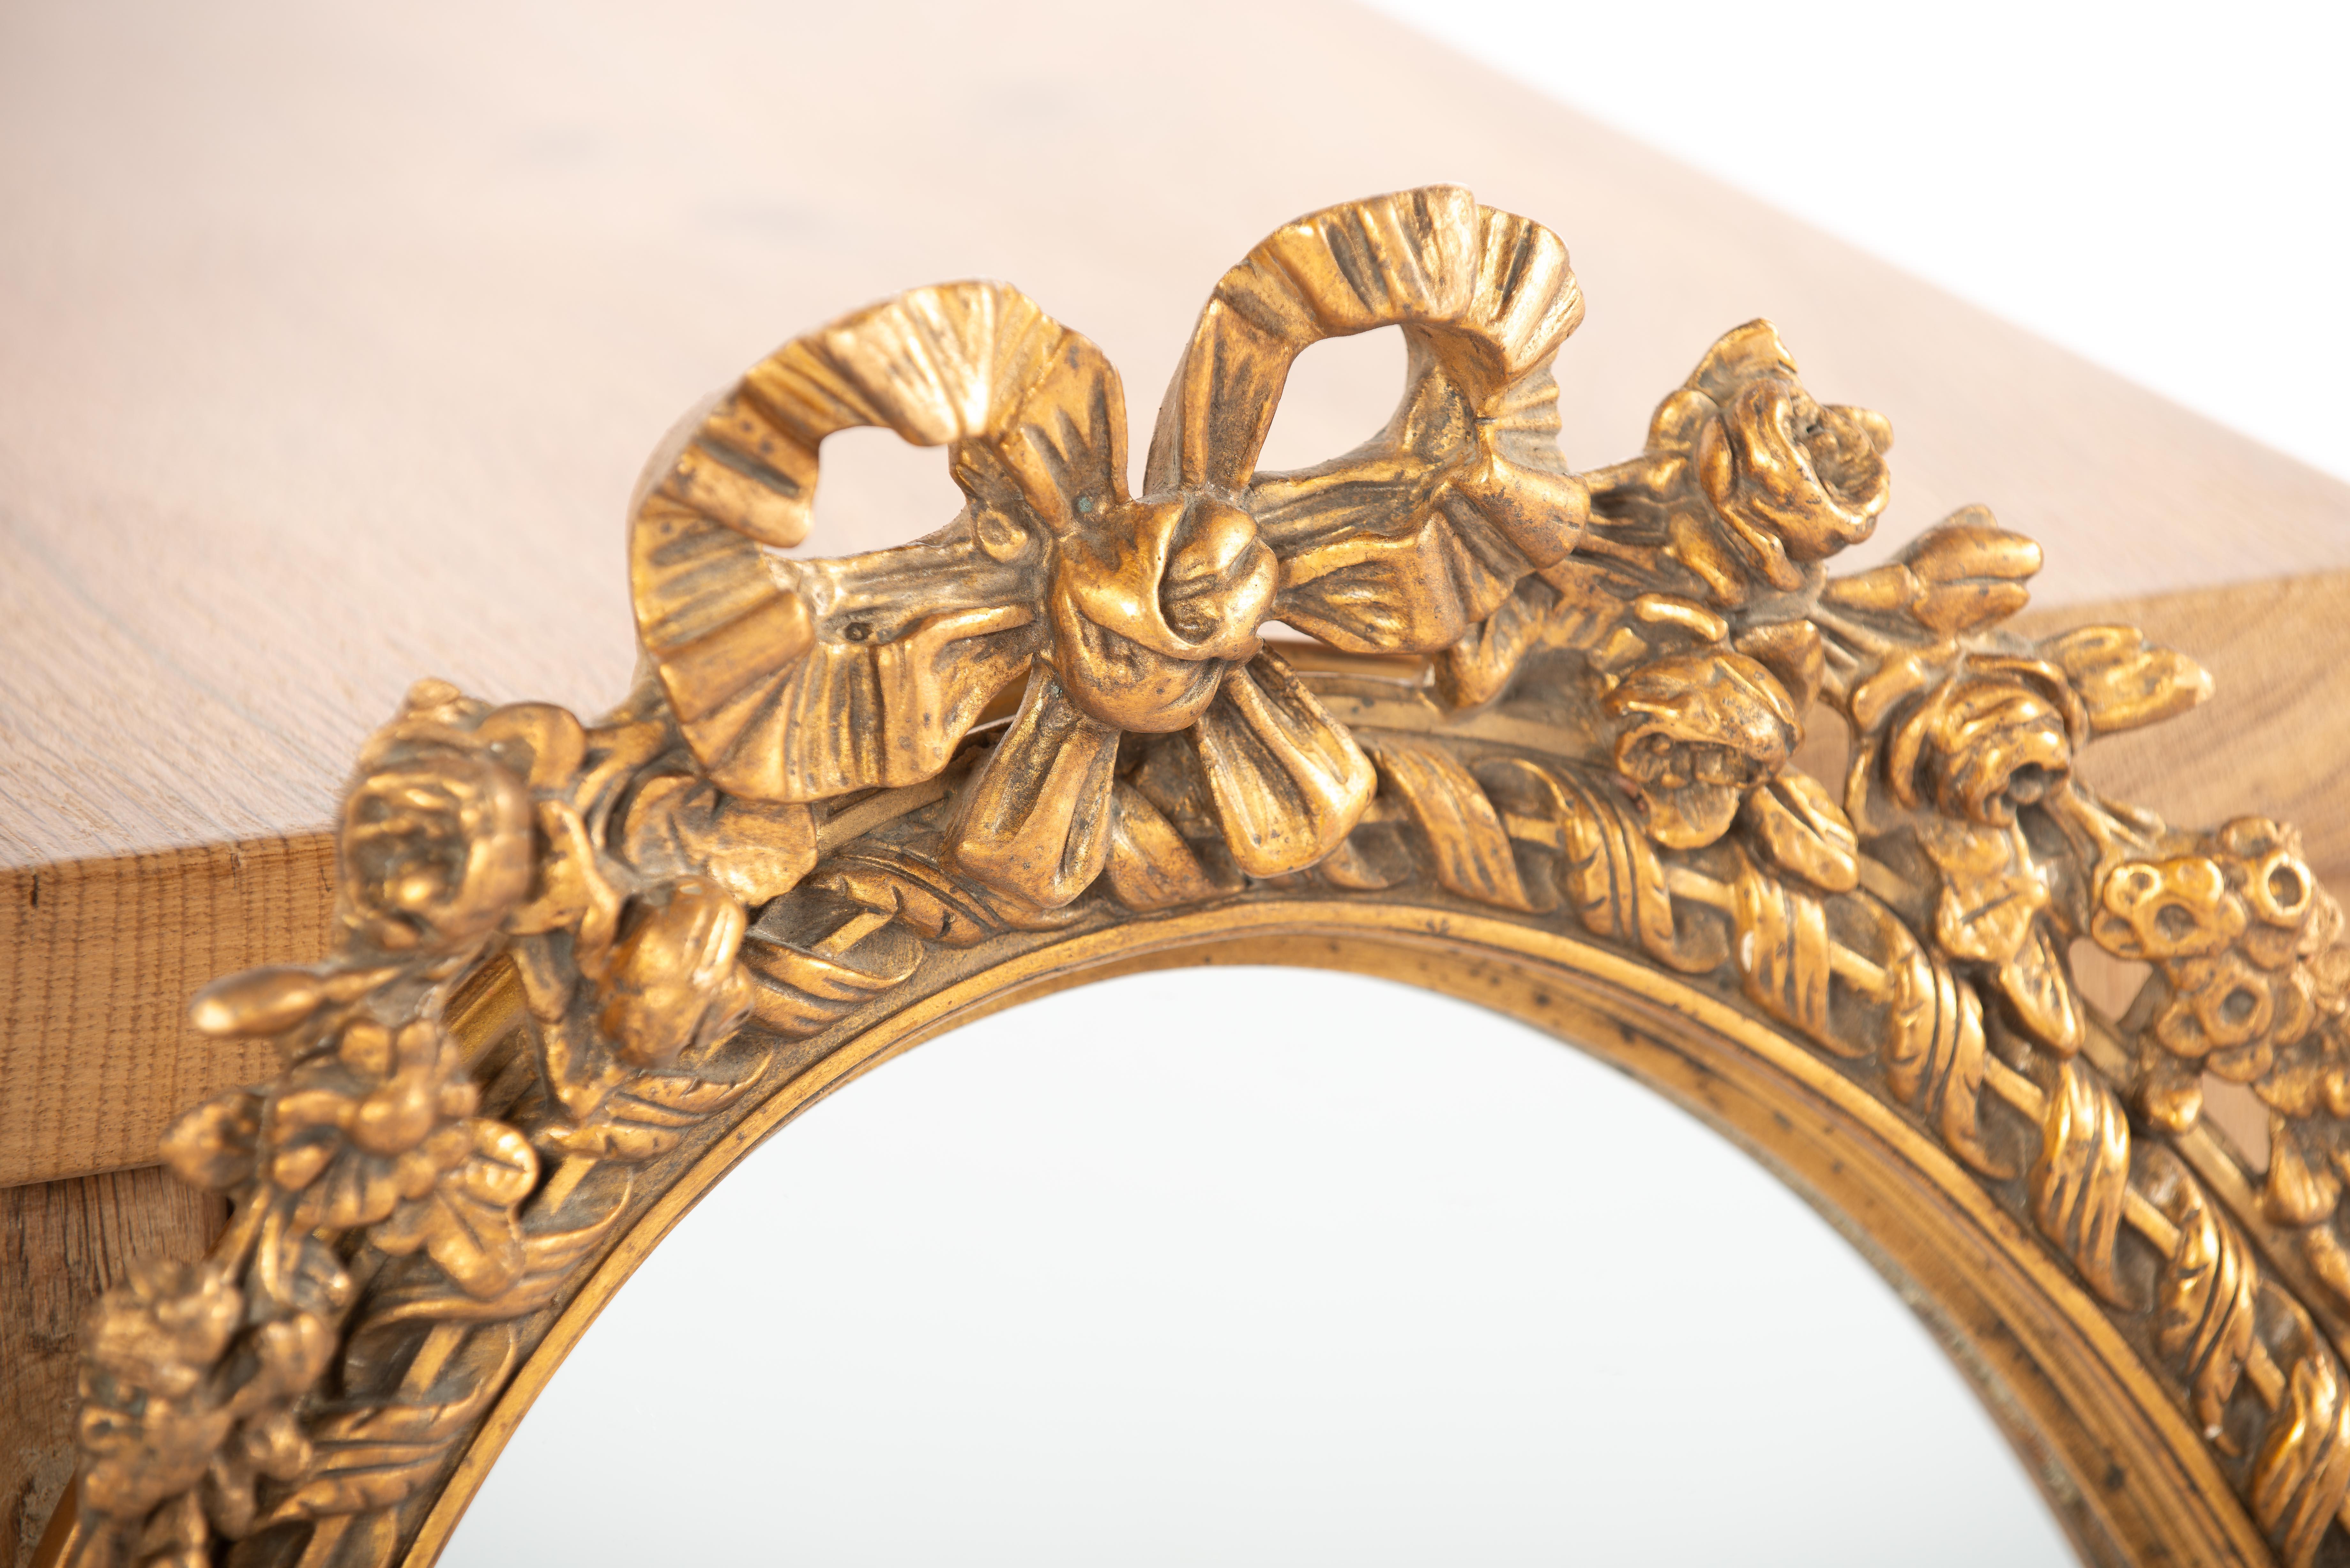 Il s'agit d'un magnifique petit miroir ovale qui a été fabriqué en France au début du 20e siècle, vers 1910. Le miroir présente un cadre en bois de tilleul et est orné de moulures et d'ornements en plâtre. L'ornement supérieur consiste en un ruban